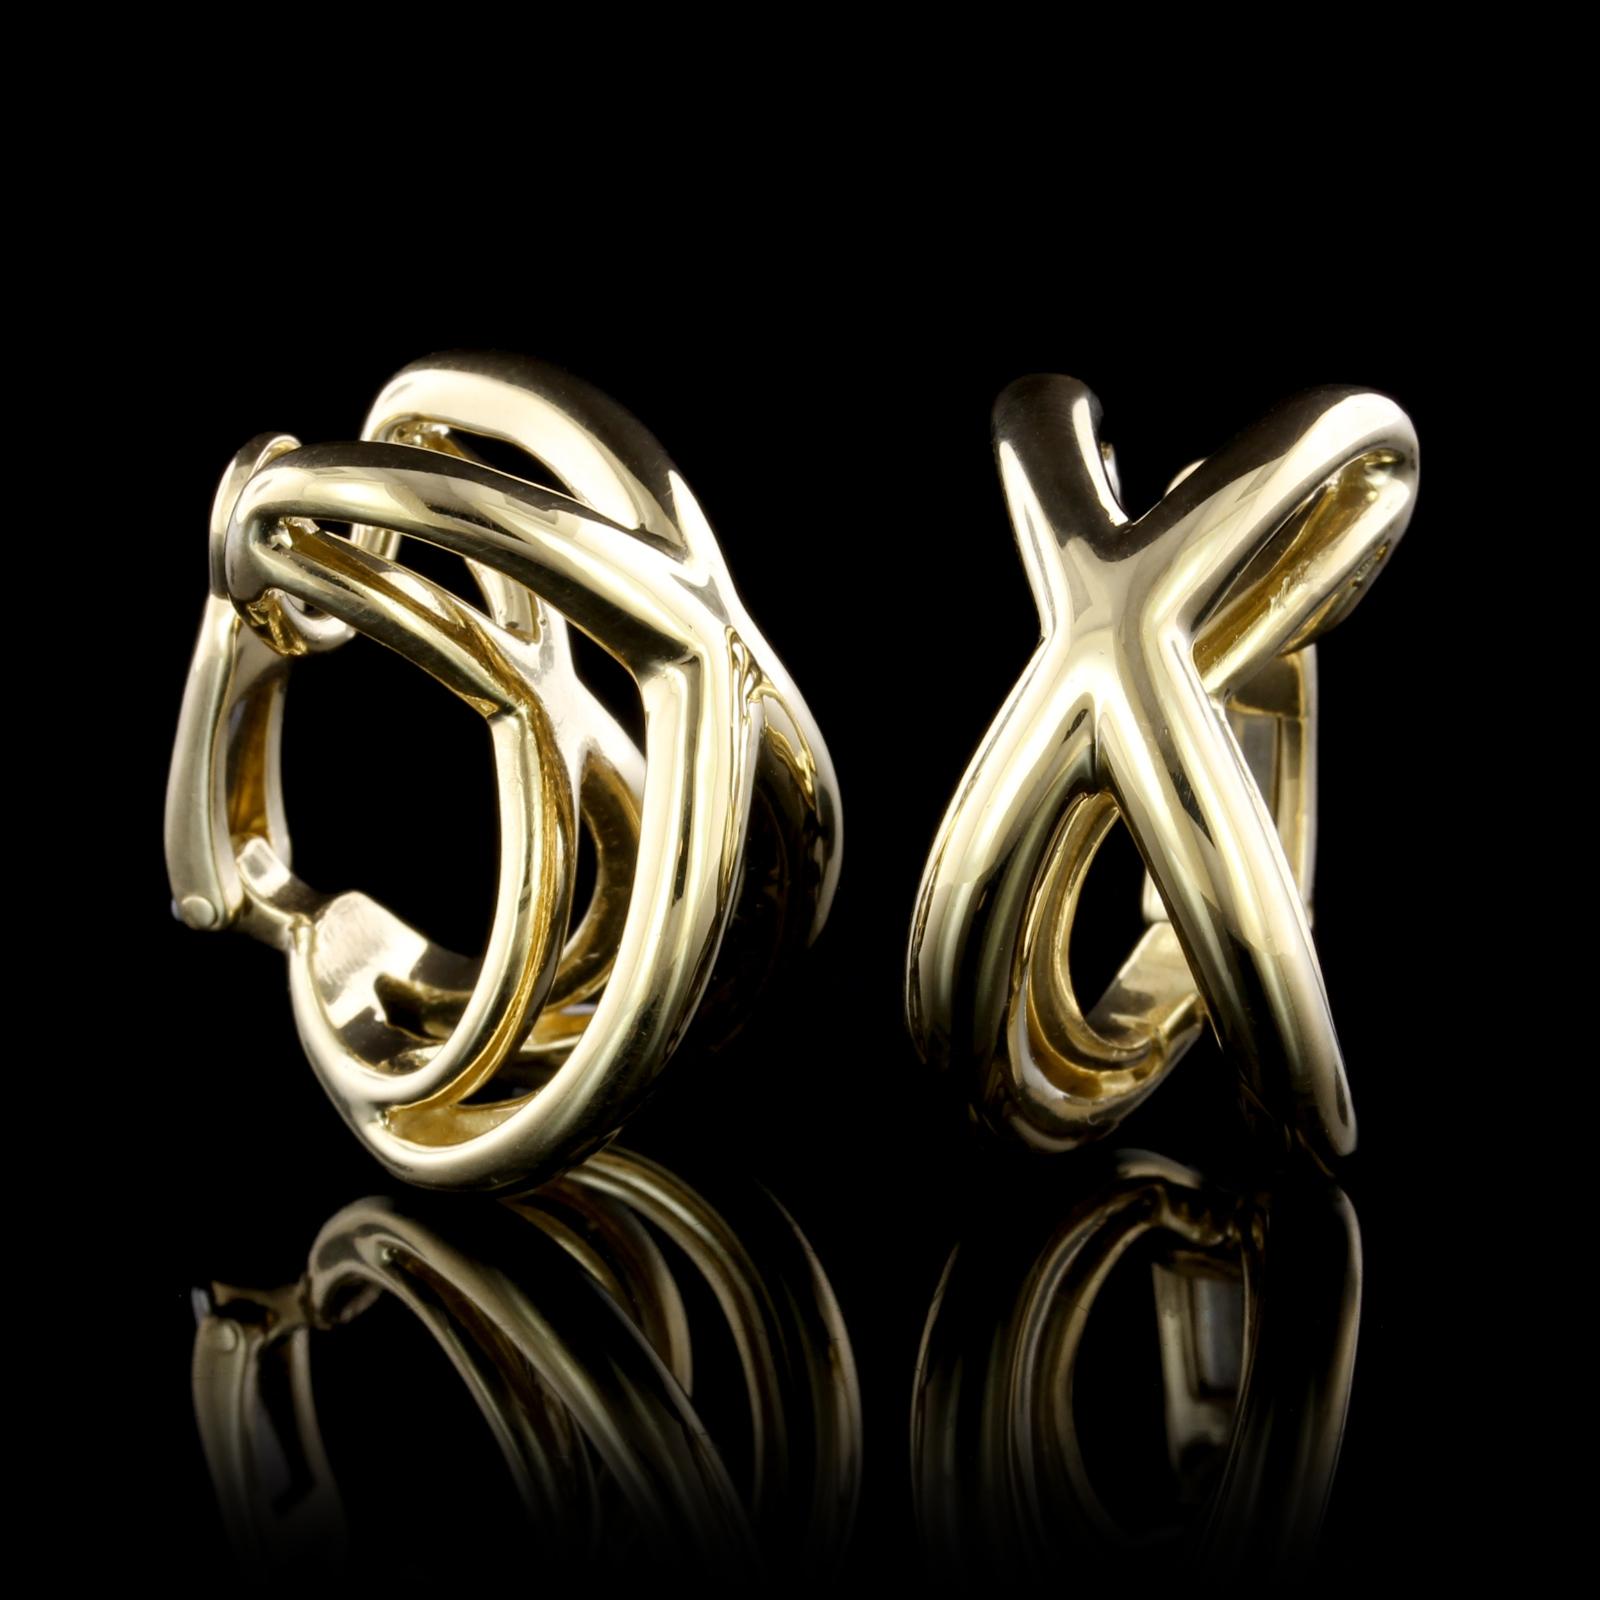 Tiffany & Co. 18K Yellow Gold Earrings. Each earrings is a domed X design, width 1/2